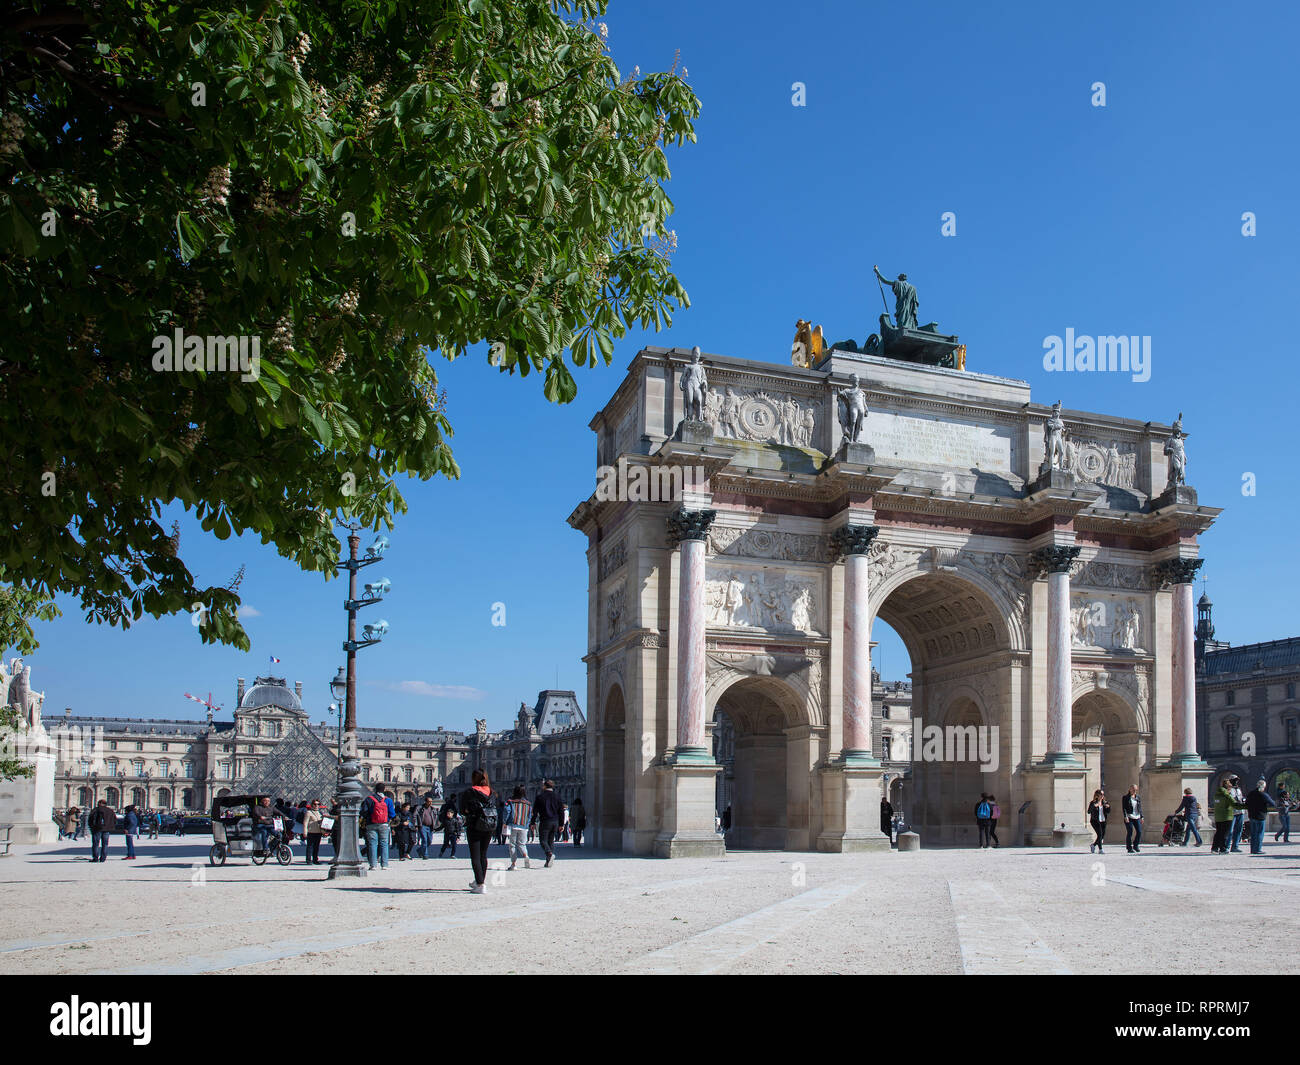 A shot of the beautiful Le Louvre Arc De Triomphe du Carrousel in Paris. Stock Photo